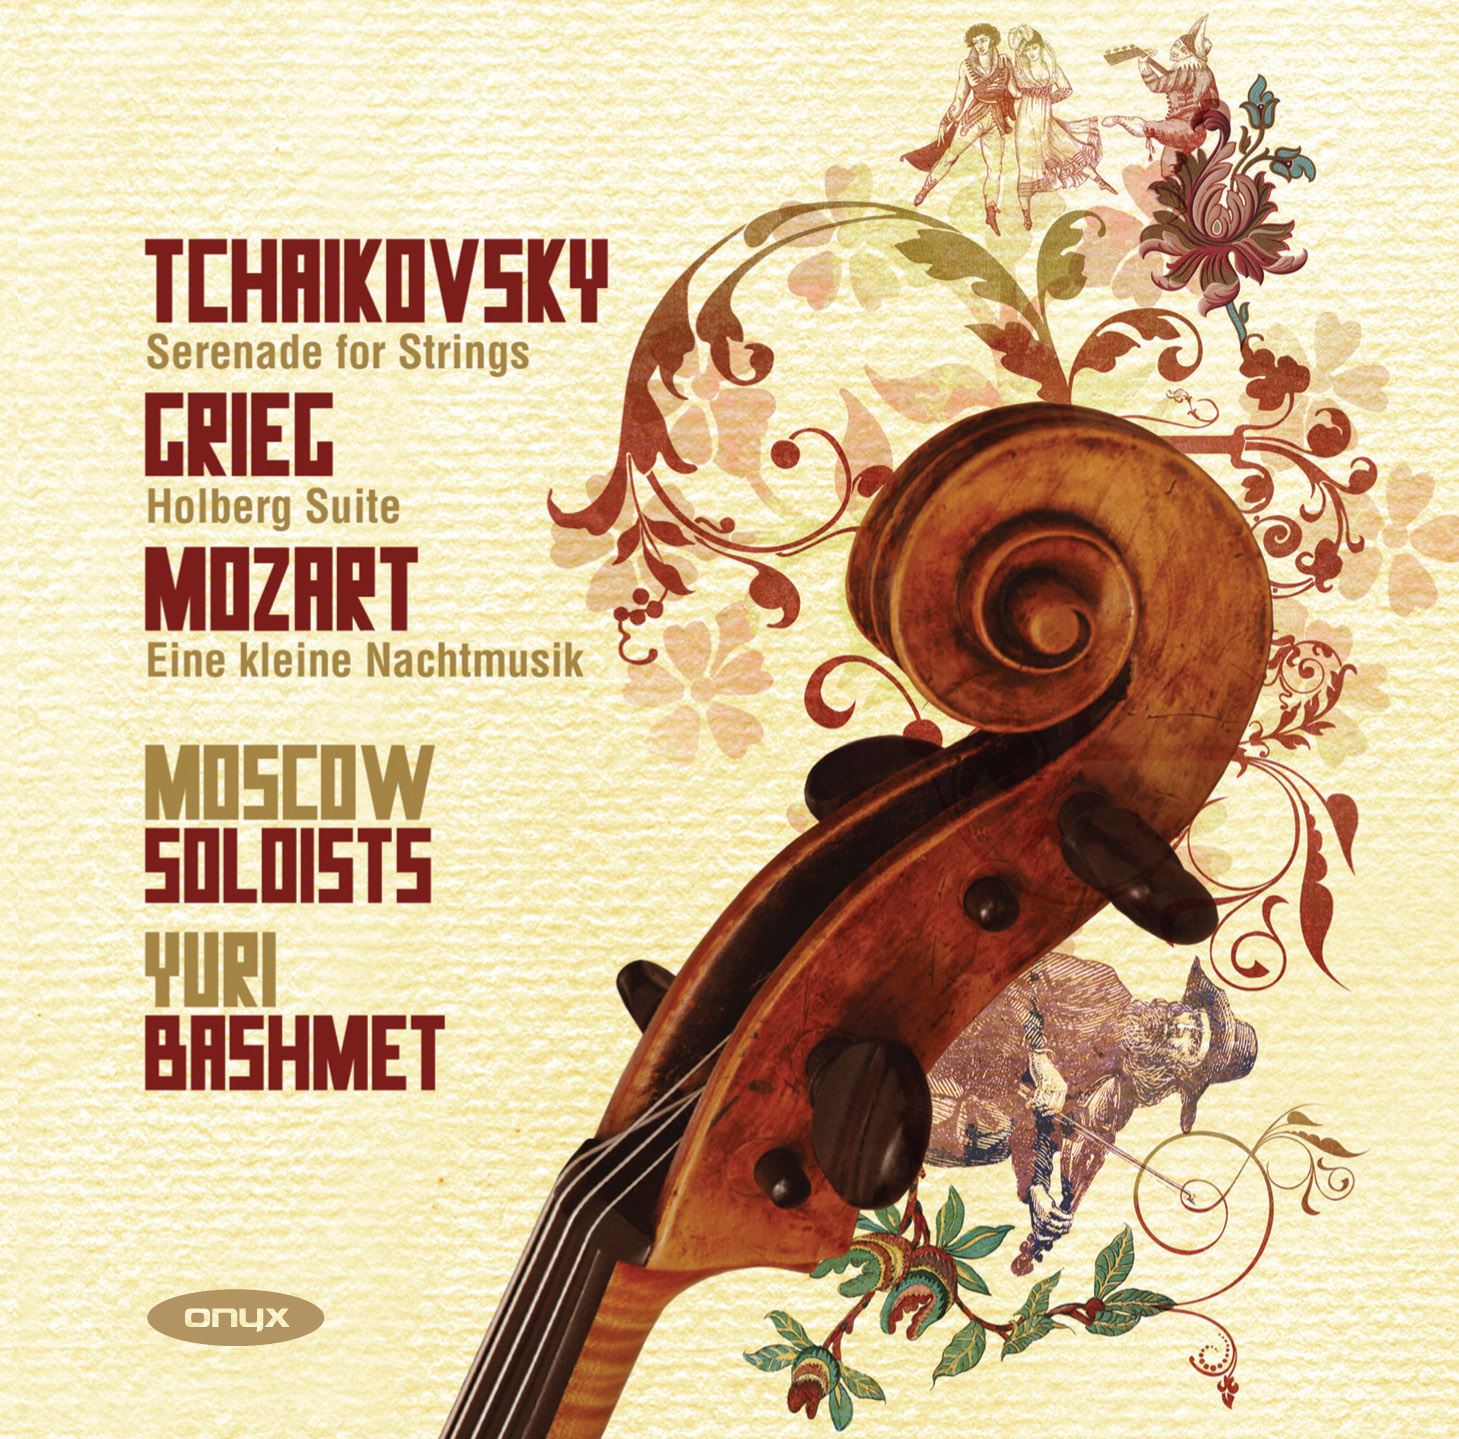 Tchaikovsky: Serenade for Strings / Grieg: Holberg Suite / Mozart: Eine kleine Nachtmusik